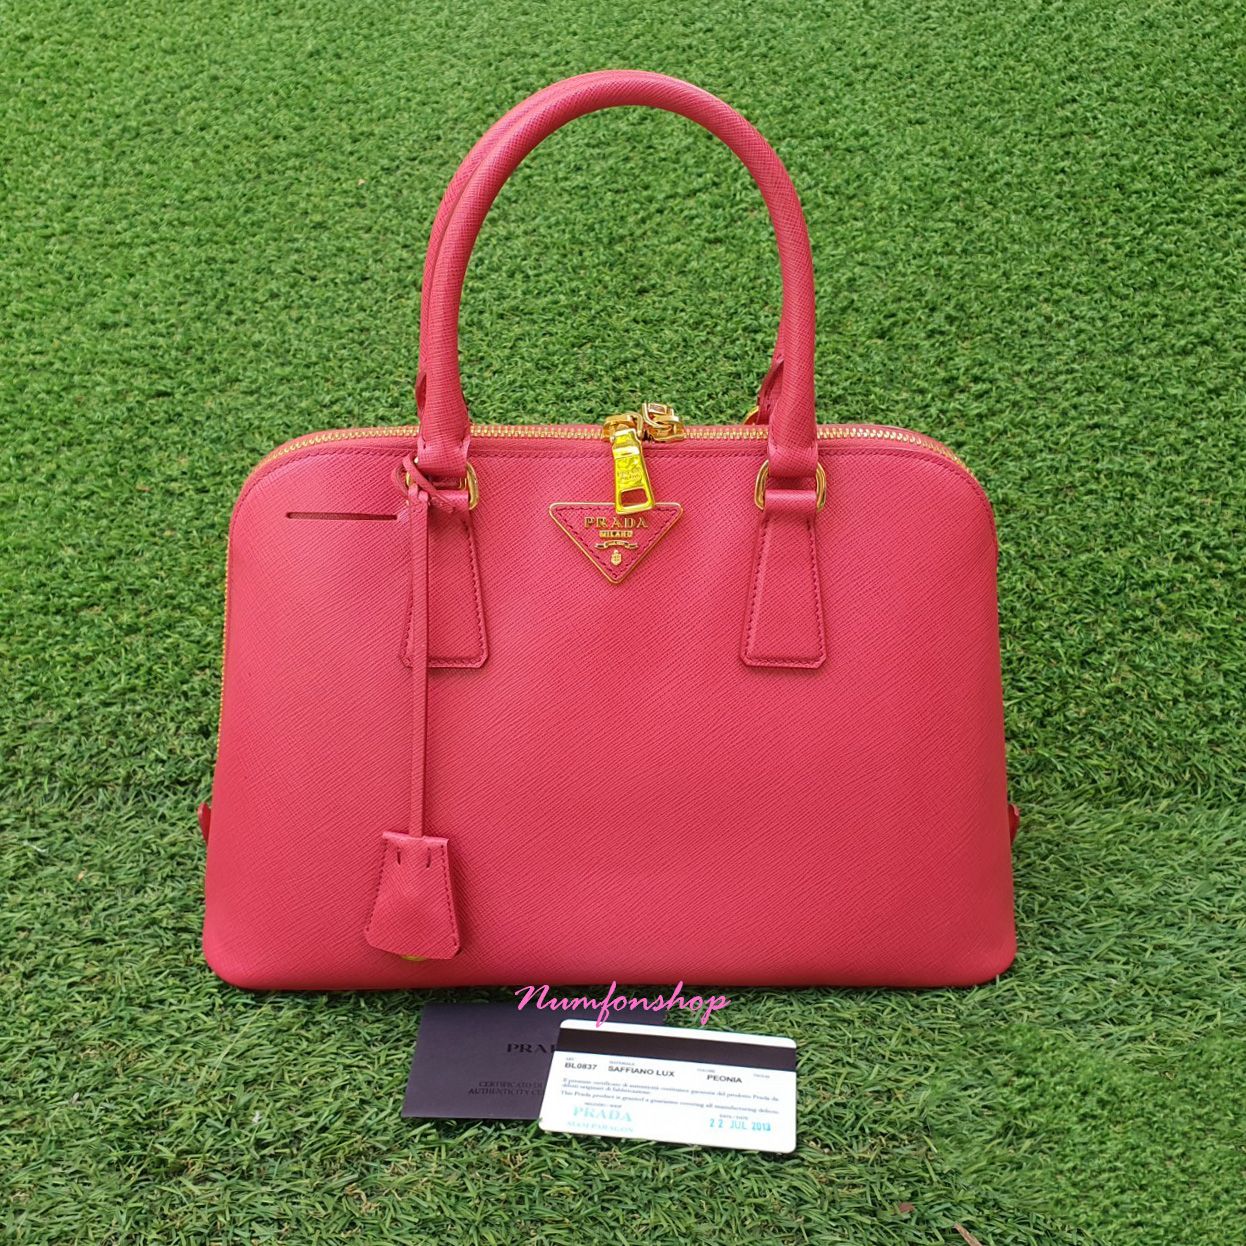 Sold Prada Saffiano Alma 30 cm, pink, beautiful condition, no straps.